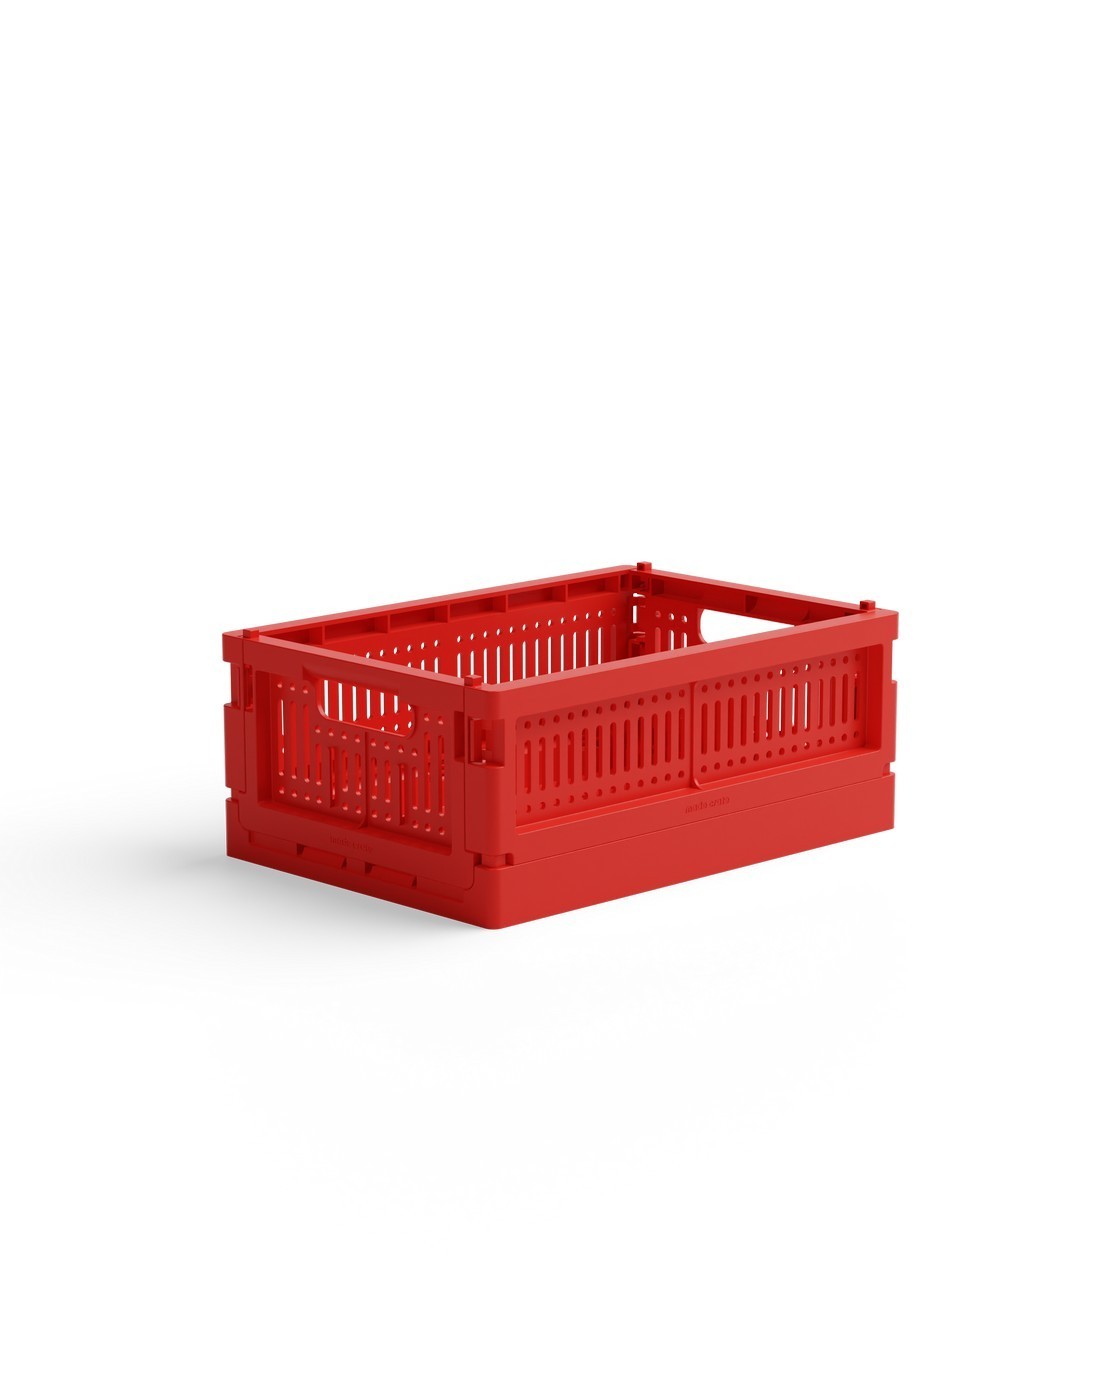 Skládací přepravka mini Made Crate  - so bright red